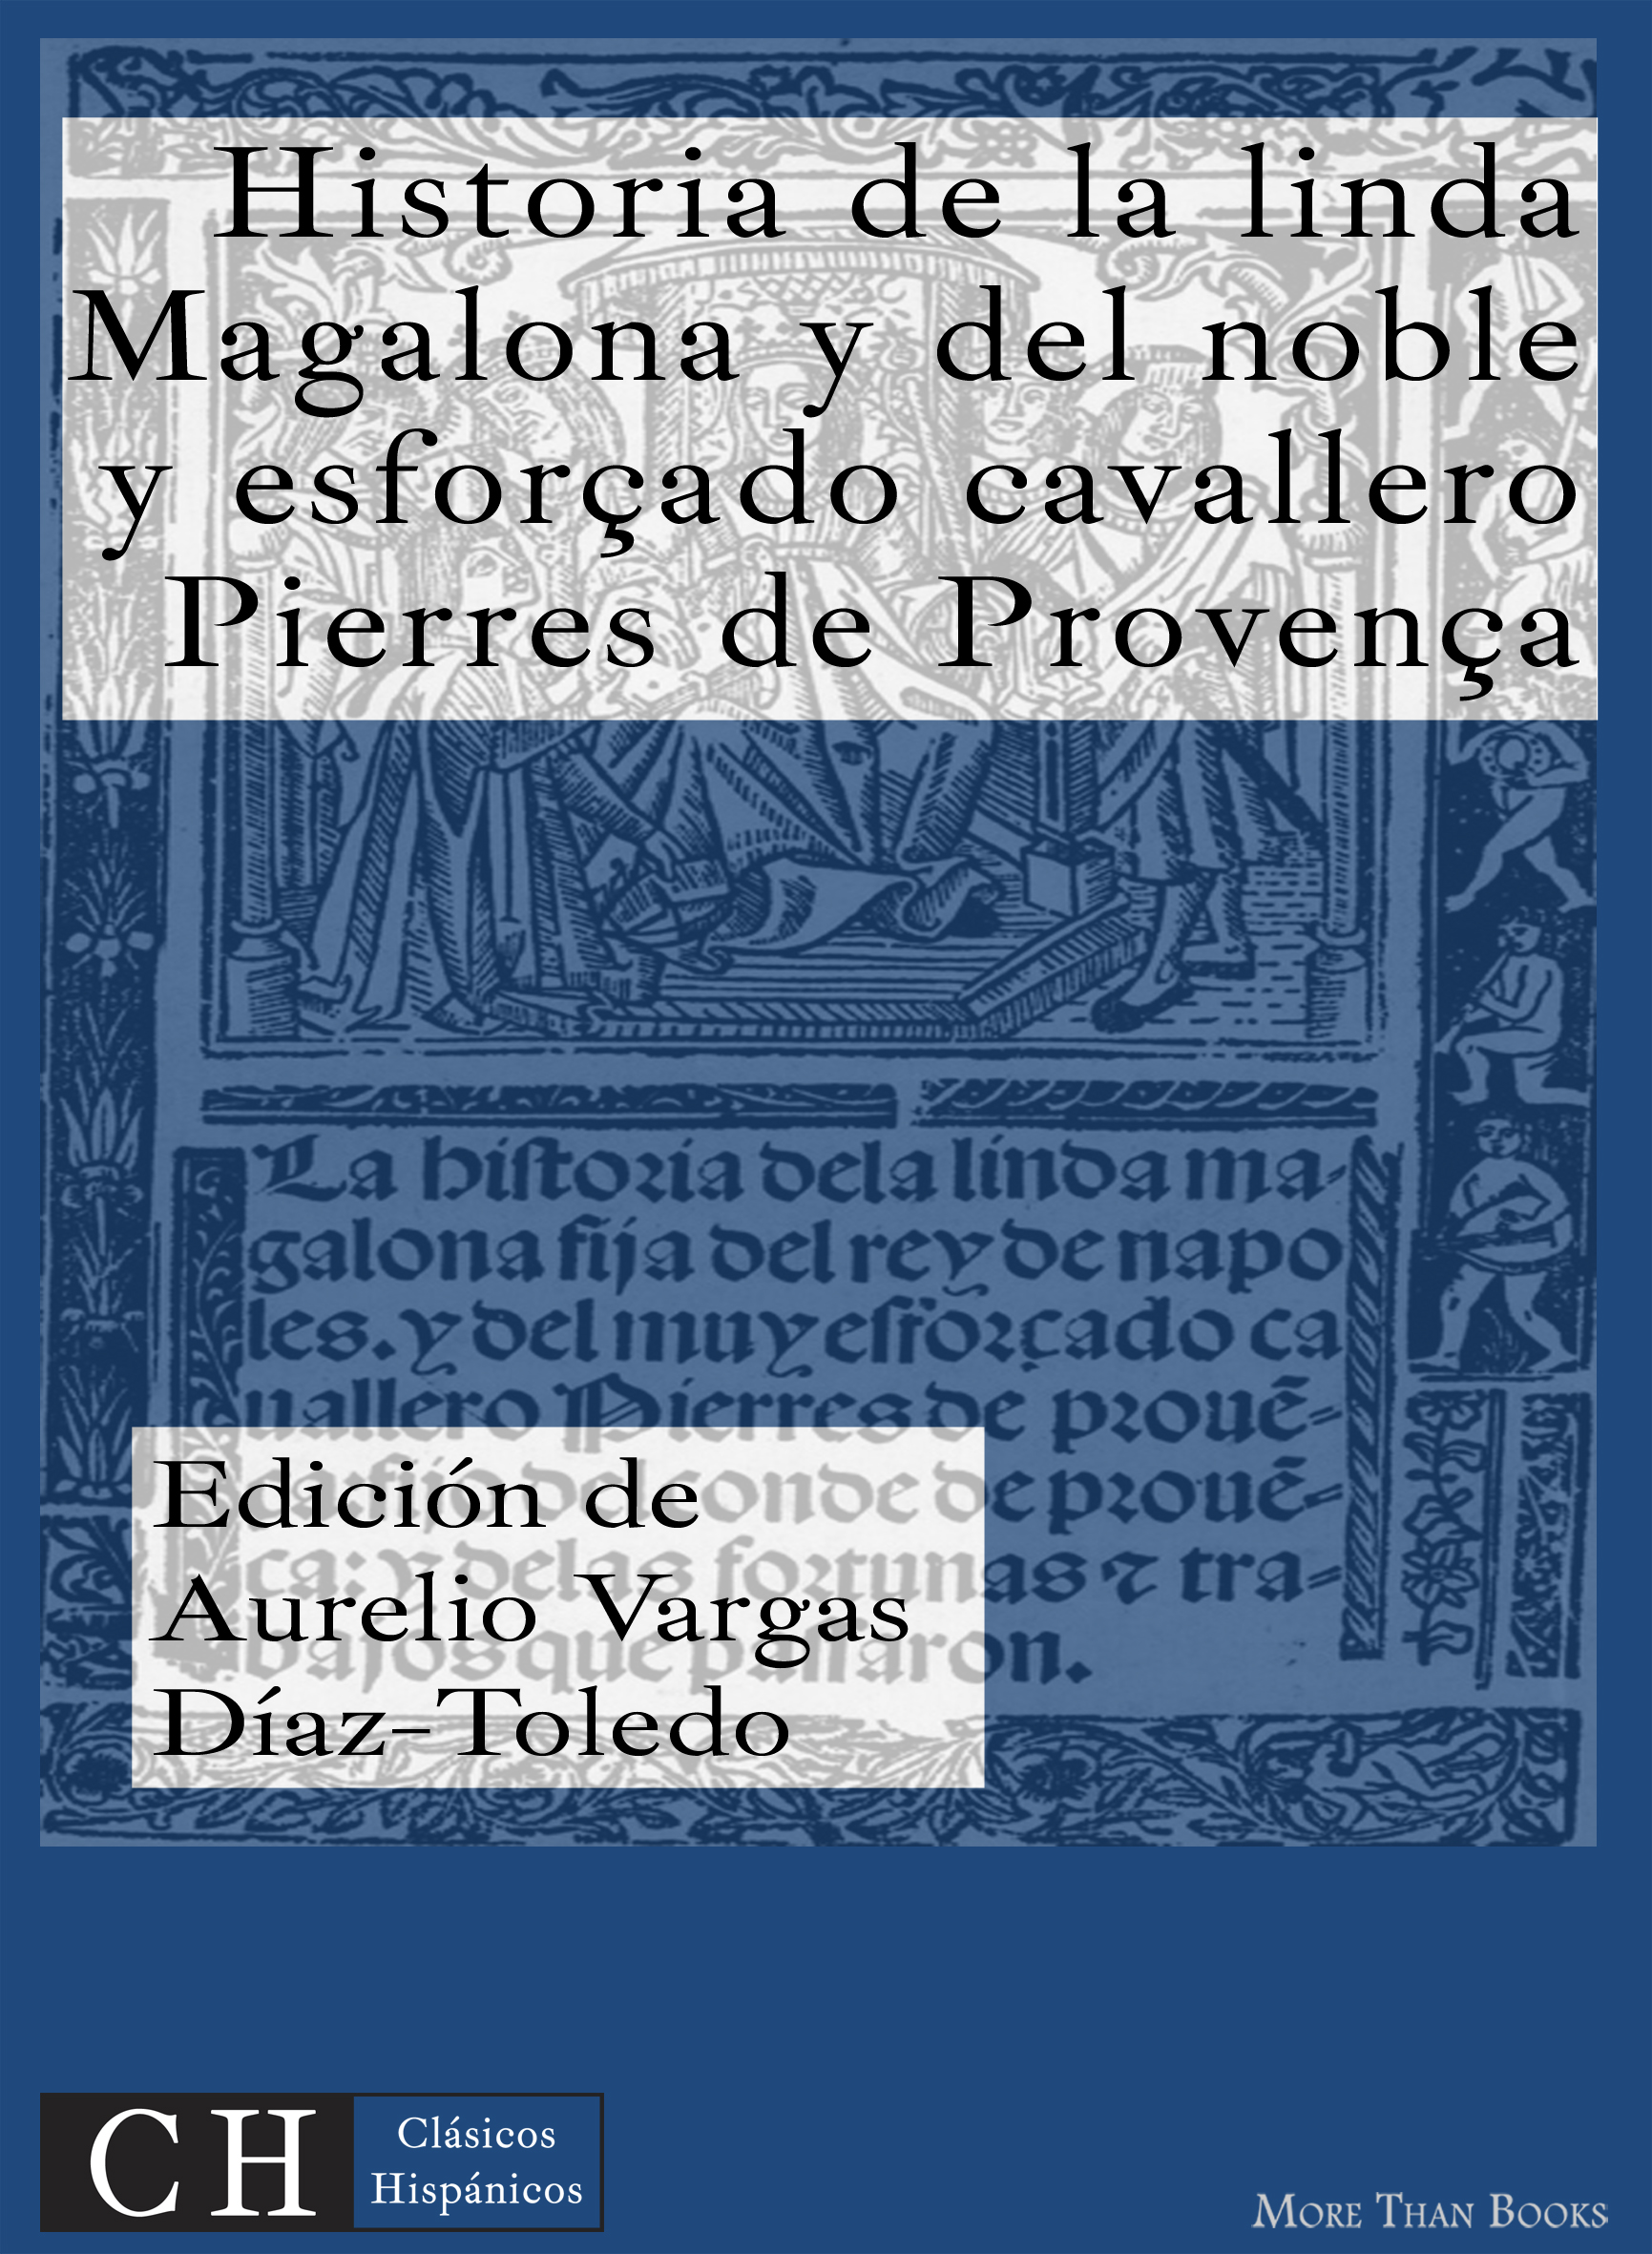 Imagen de portada del libro Historia de la linda Magalona y del noble y esforzado caballero Pierres de Provenza